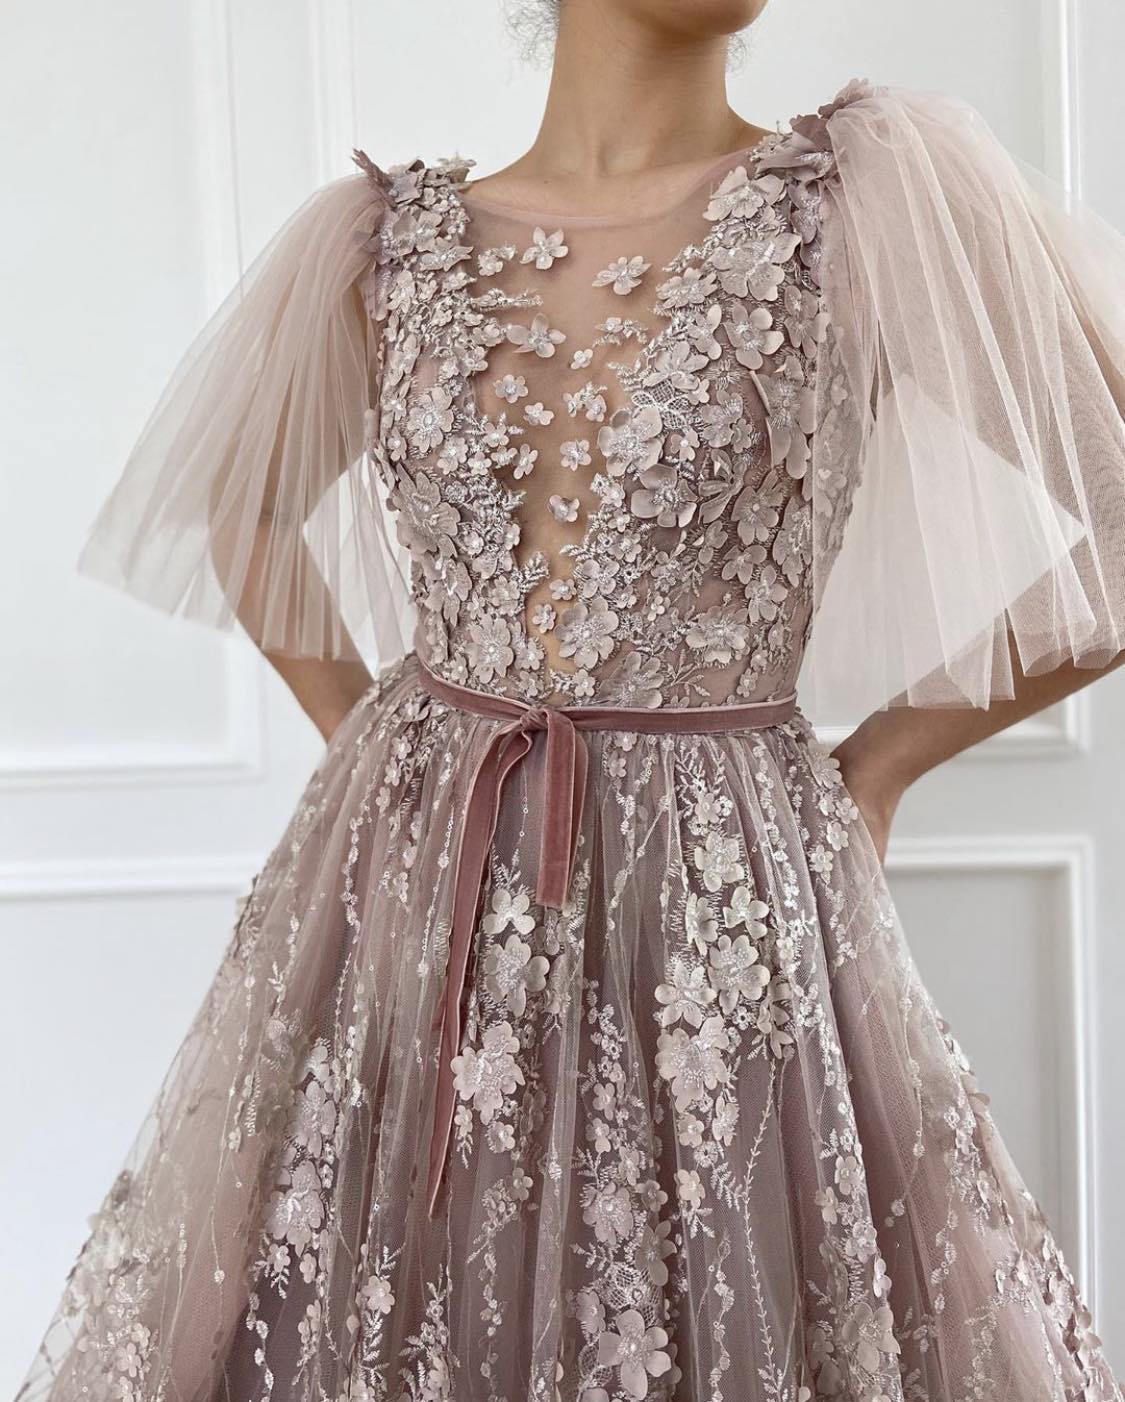 Glittery Corset & Organza Dress – Dona Matoshi